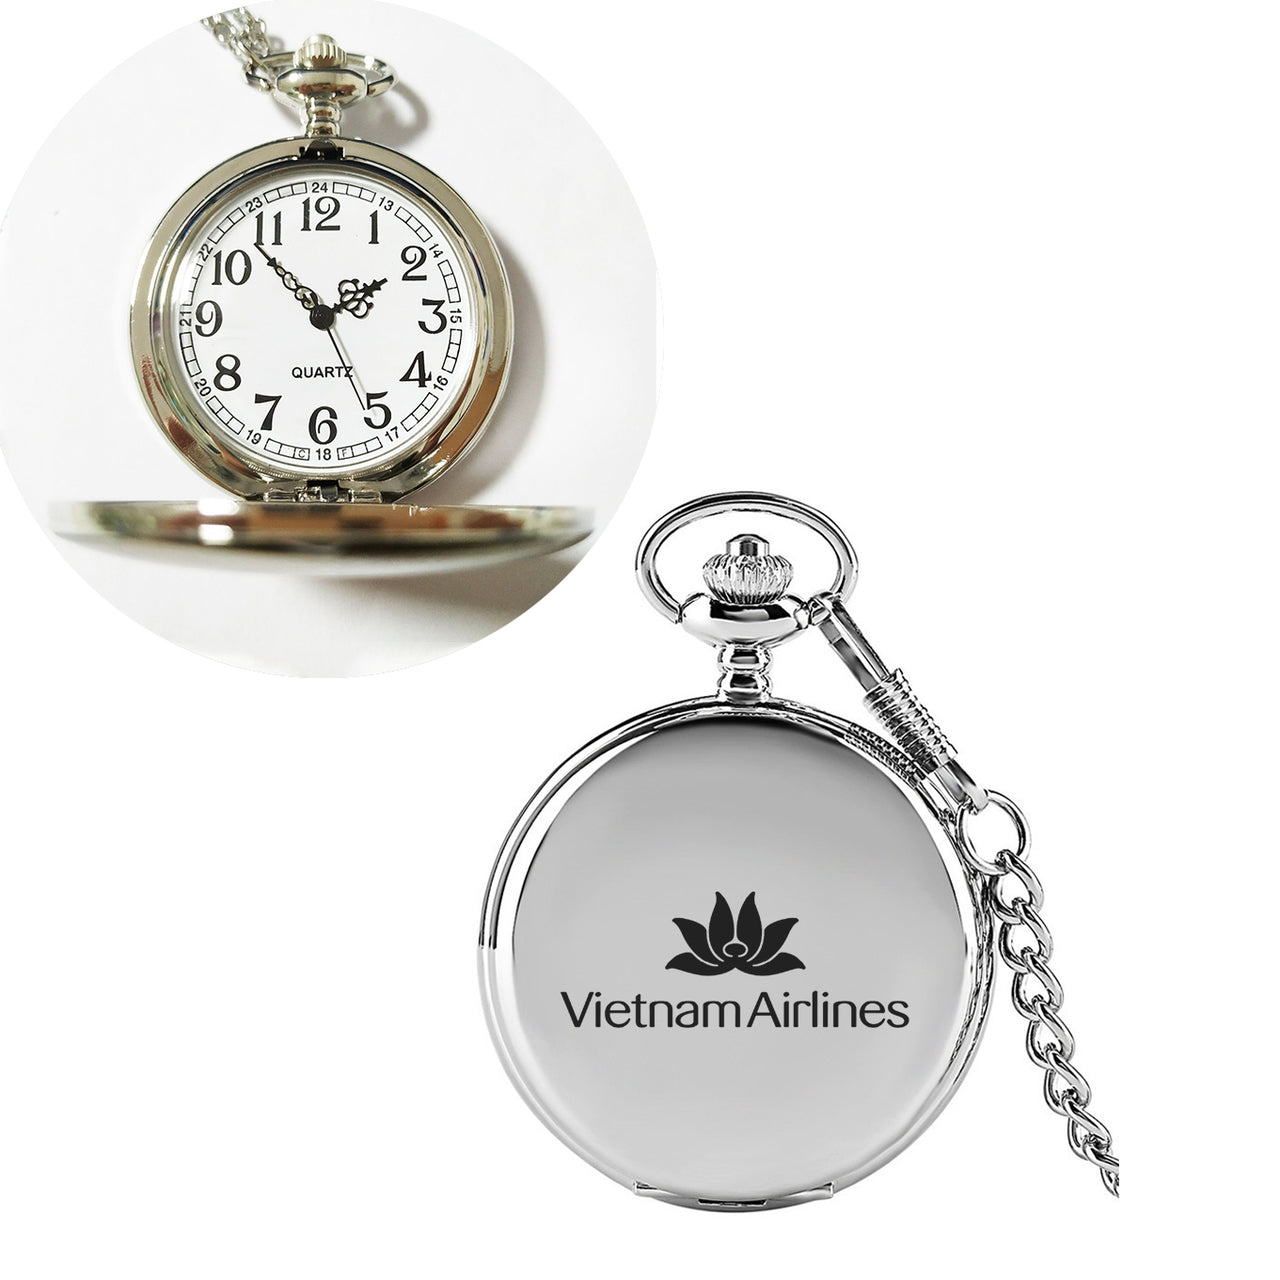 Vietnam Airlines Designed Pocket Watches